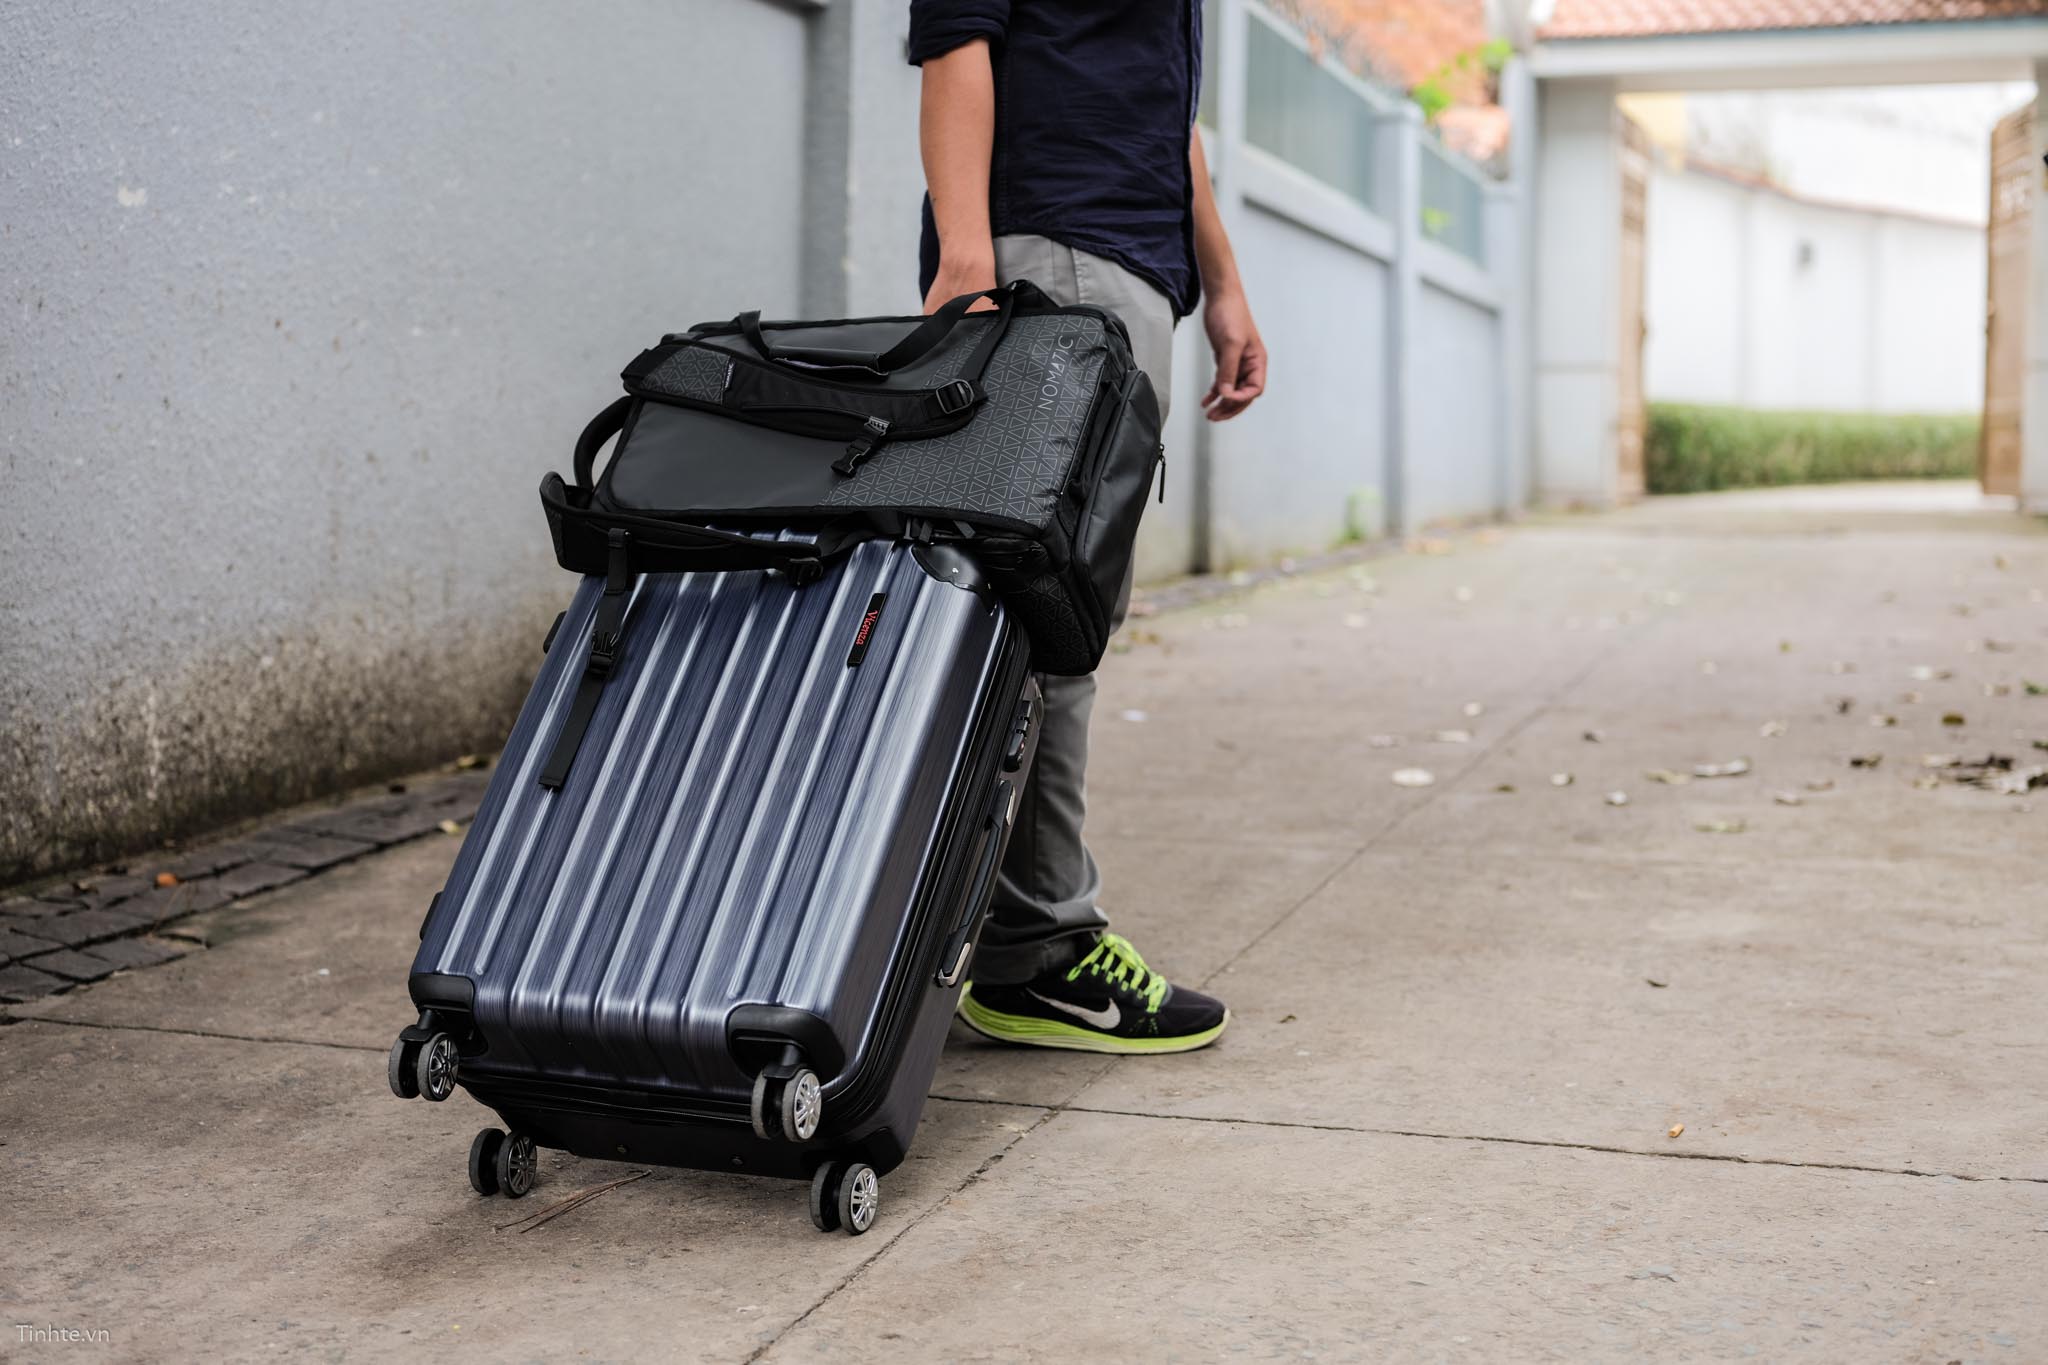 Yếu tố chọn vali du lịch: Để chọn được chiếc vali du lịch hoàn hảo, hãy cùng tìm hiểu các yếu tố quan trọng như kích thước, chất liệu, tính năng và giá cả thông qua hình ảnh đầy đủ về các loại vali du lịch.